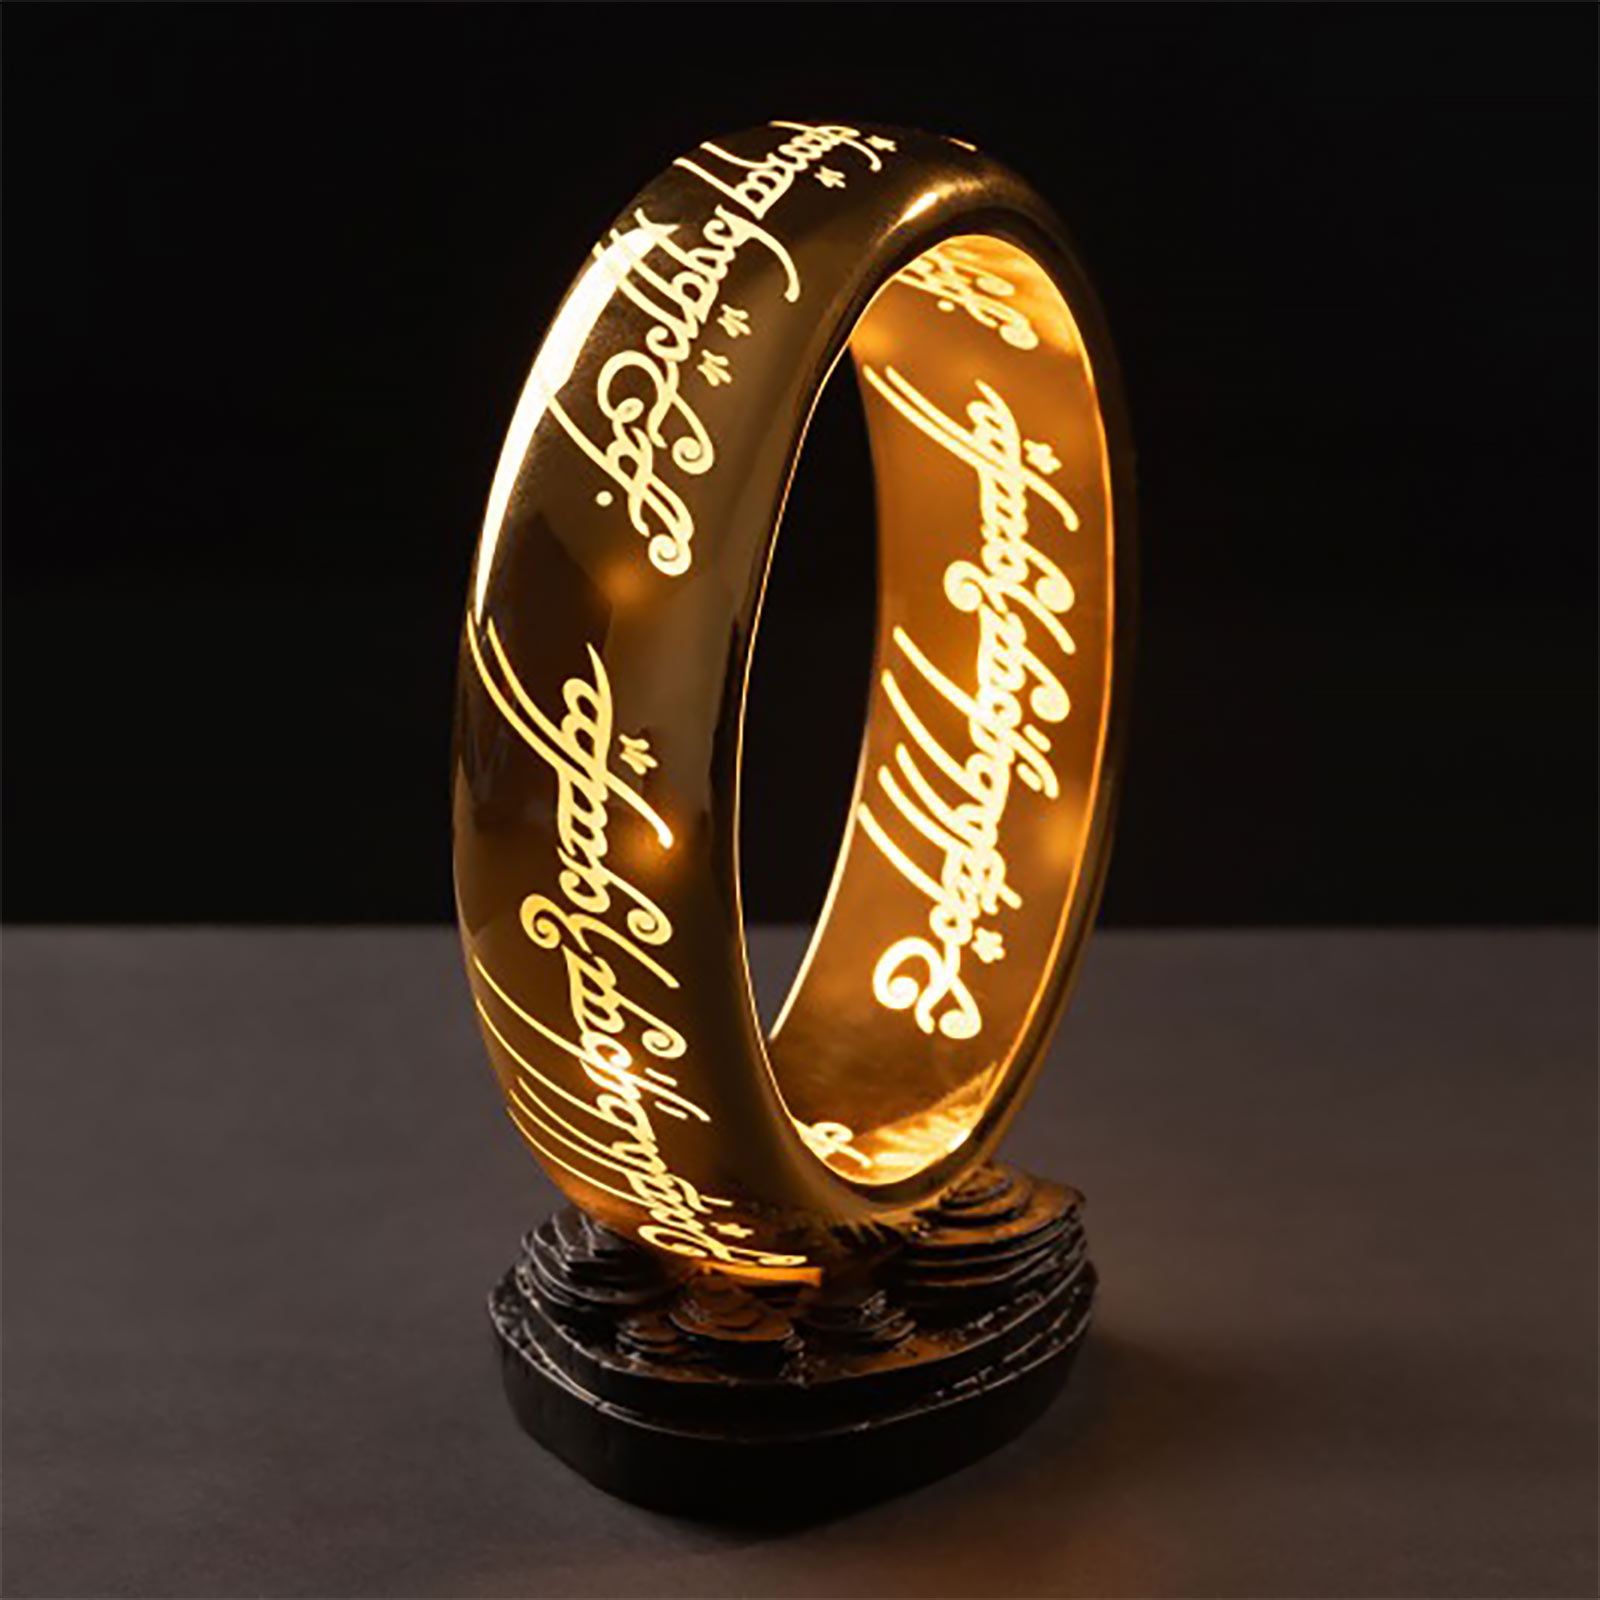 Herr der Ringe - Der Eine Ring Tischlampe